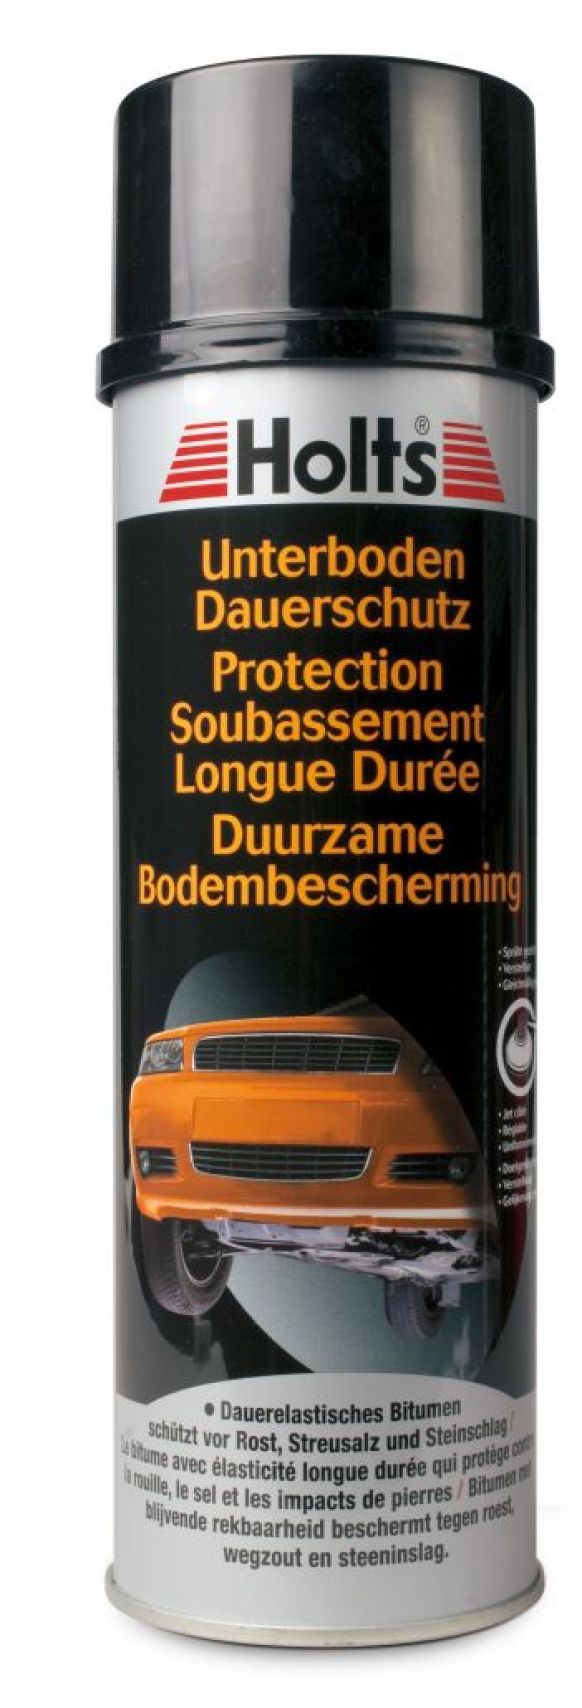 UBS Bitumen - 416516.001 - Werkstattzubehör